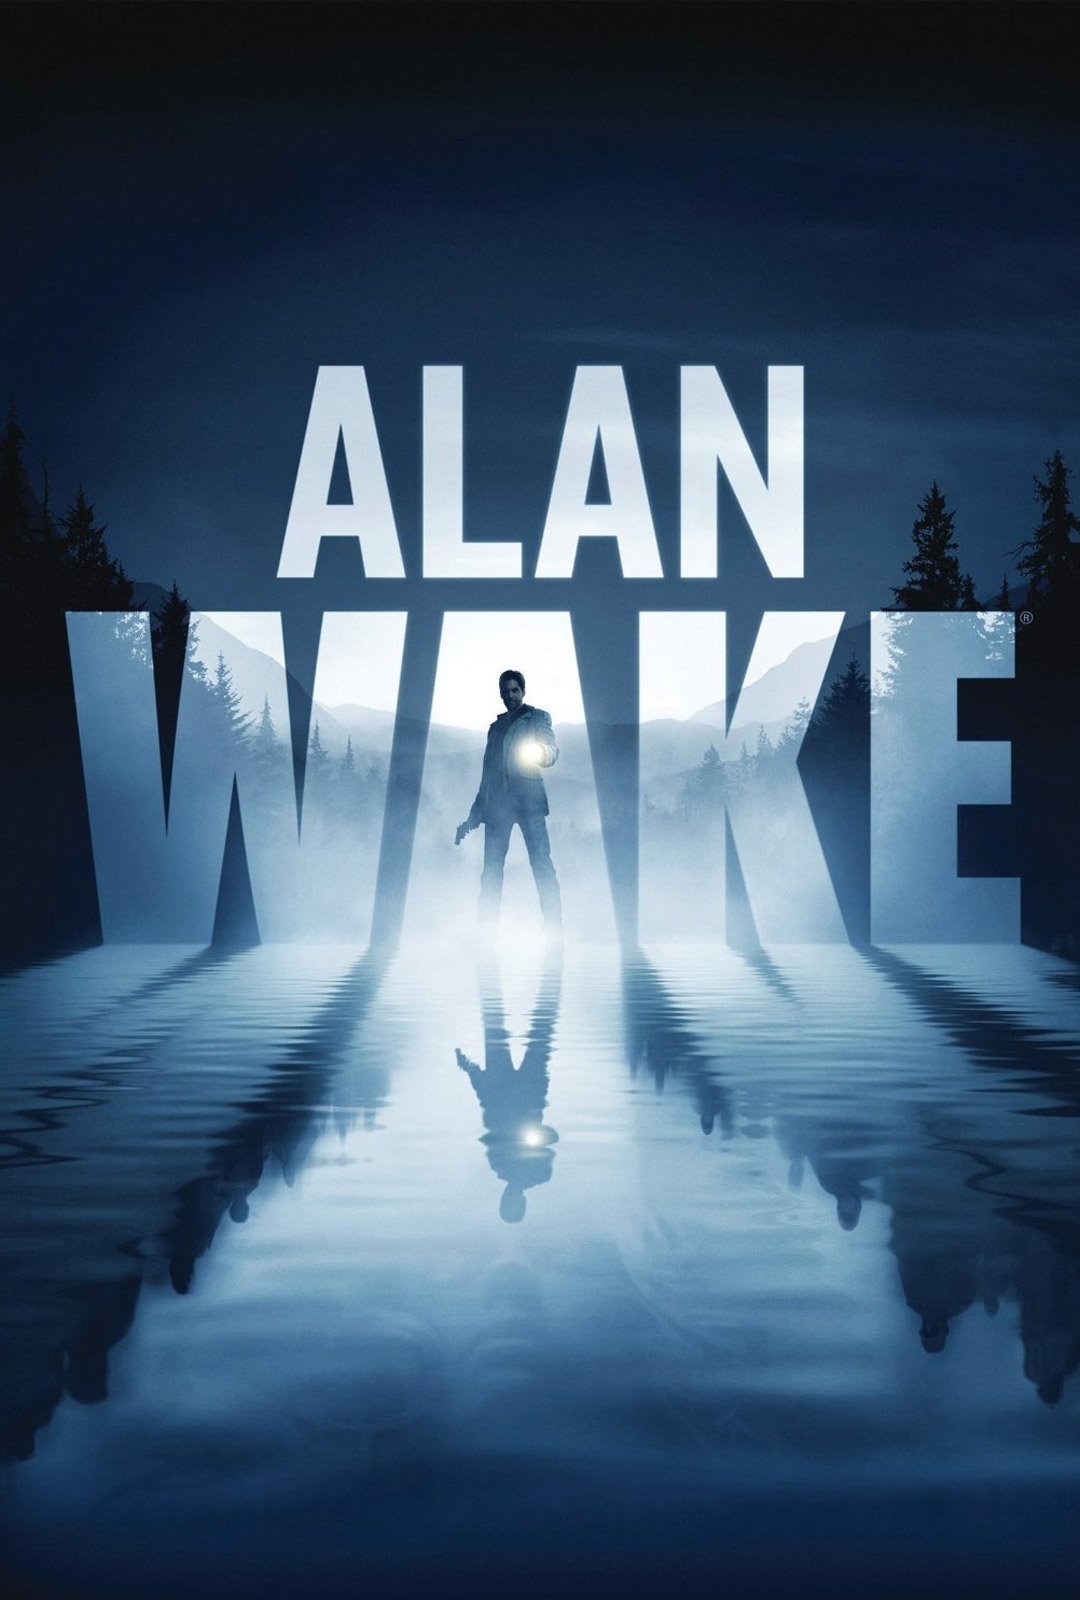 Alan wake 2 trailer